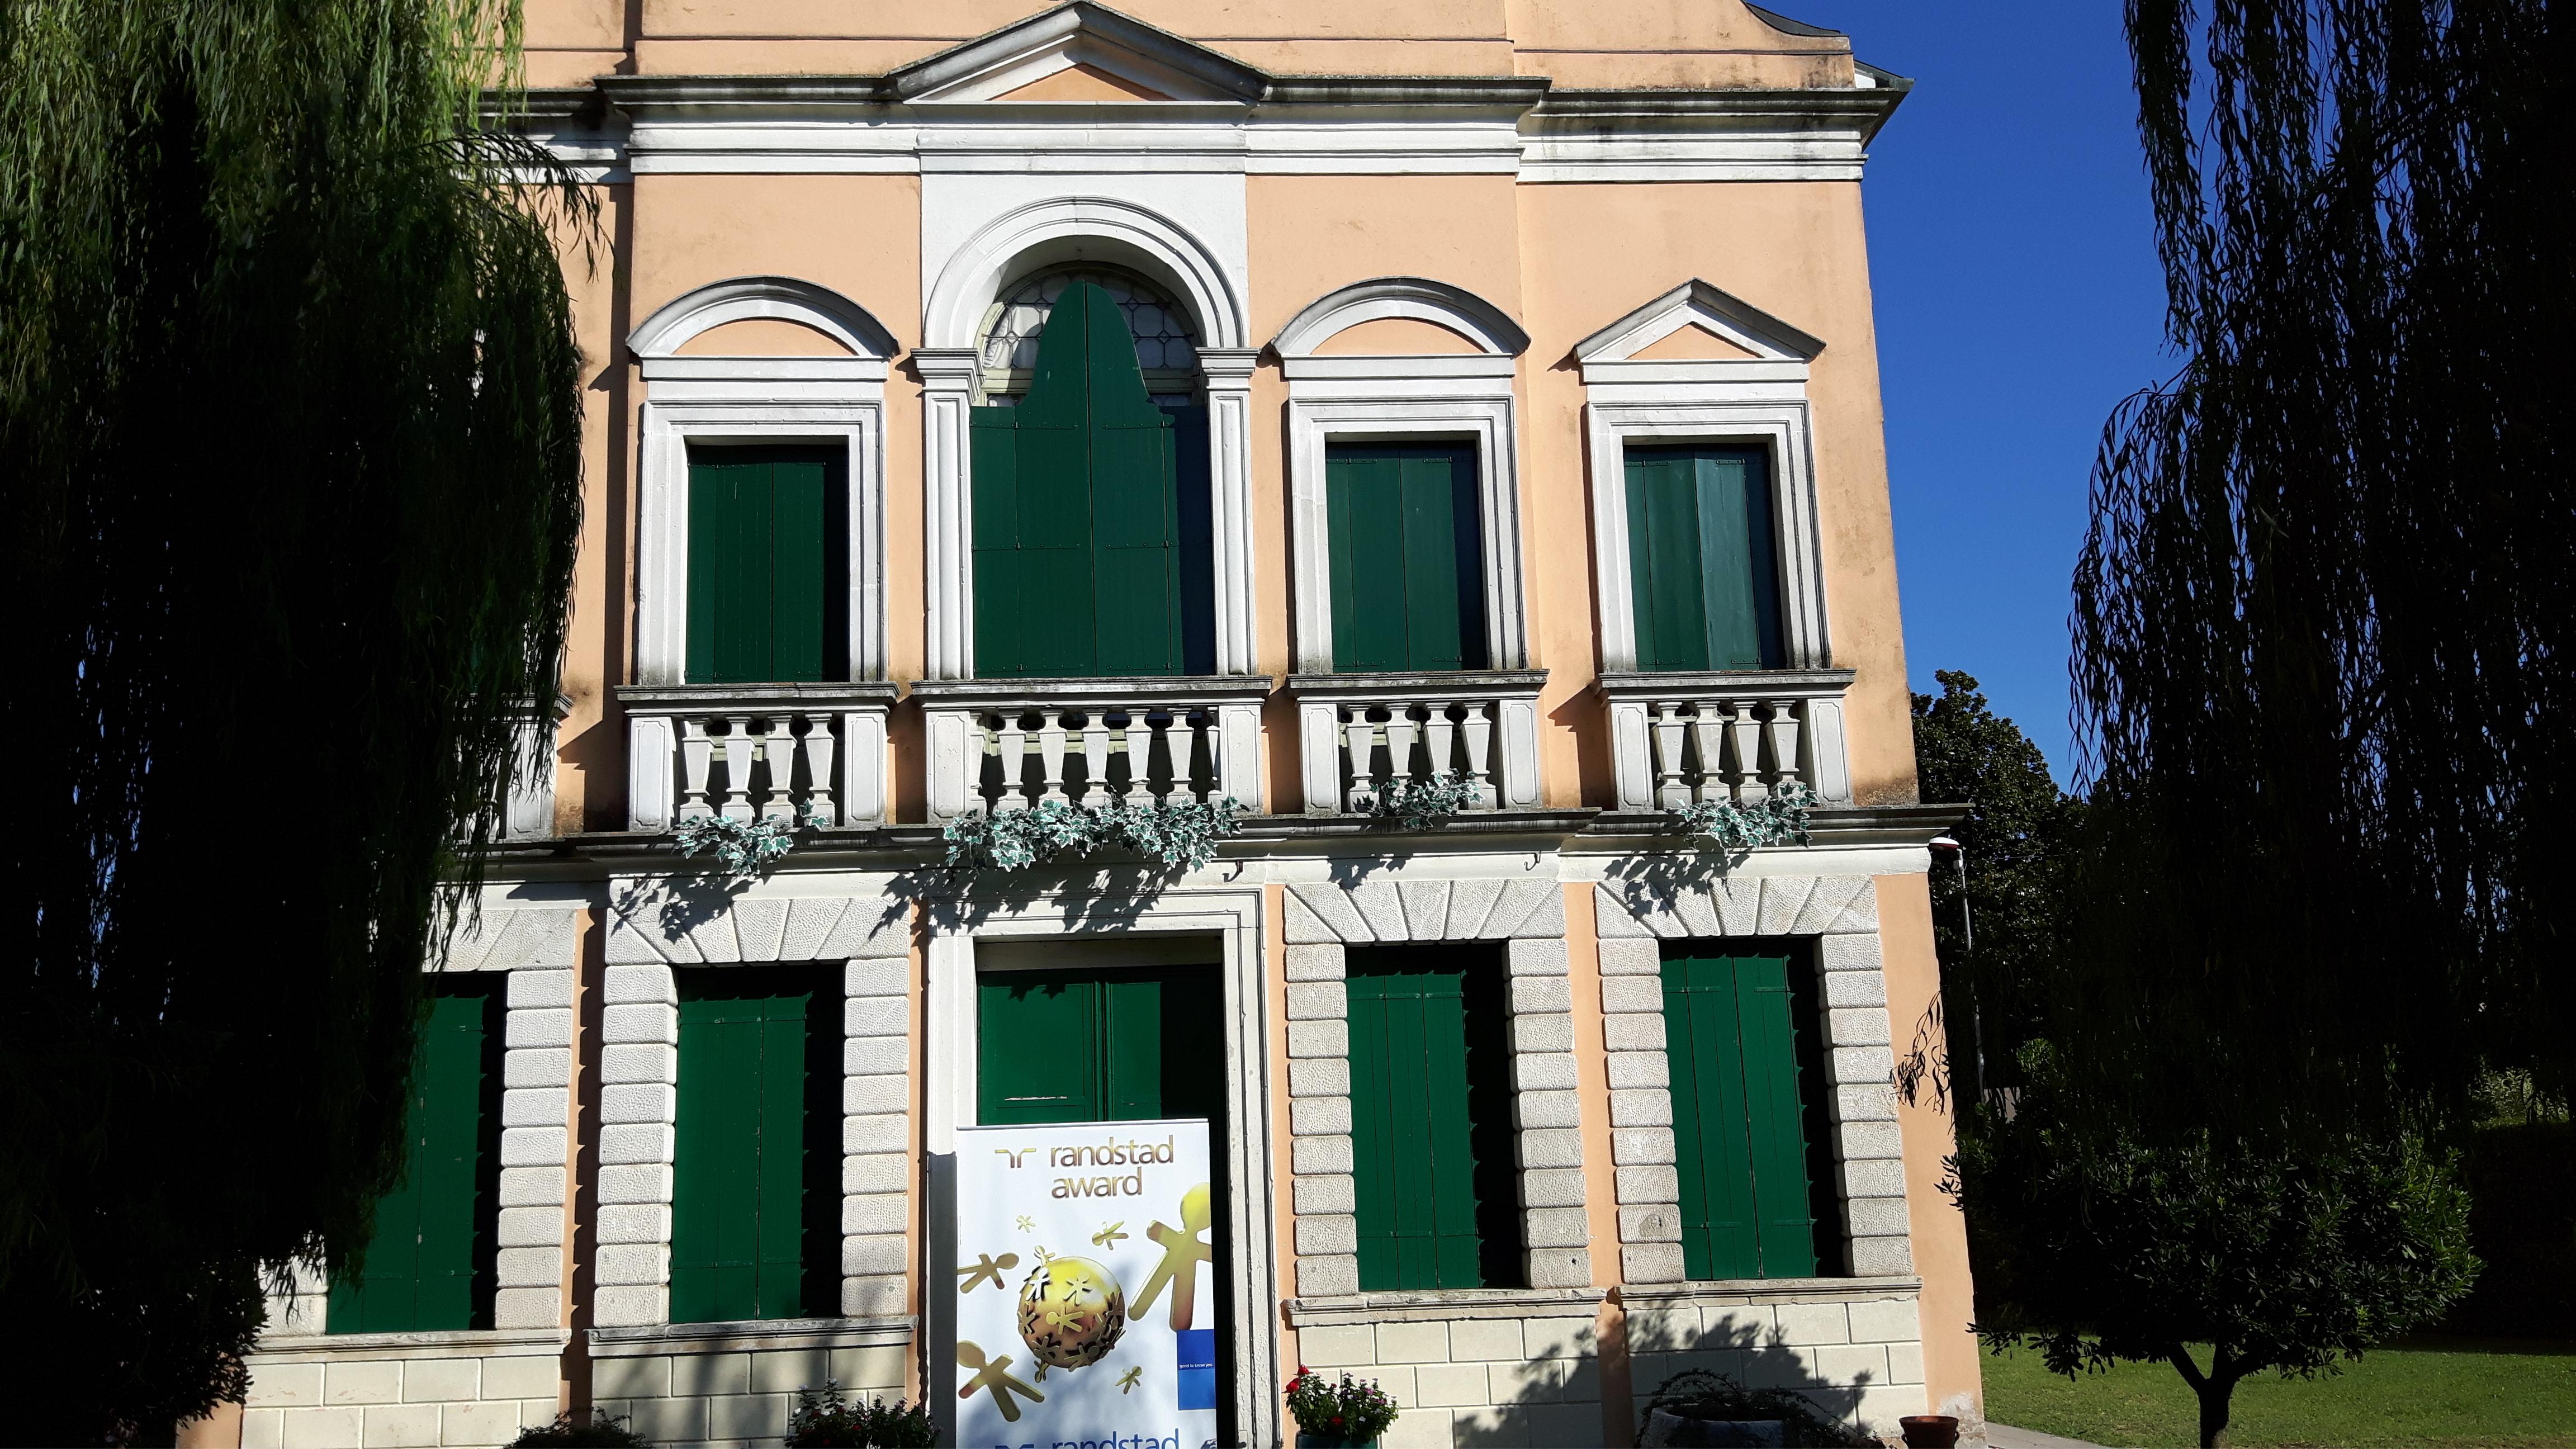 Villa Da Ponte, a Cadoneghe (Padova) dove sono stati assegnati i Regional Randstad Award Nord-Est per il 2016 